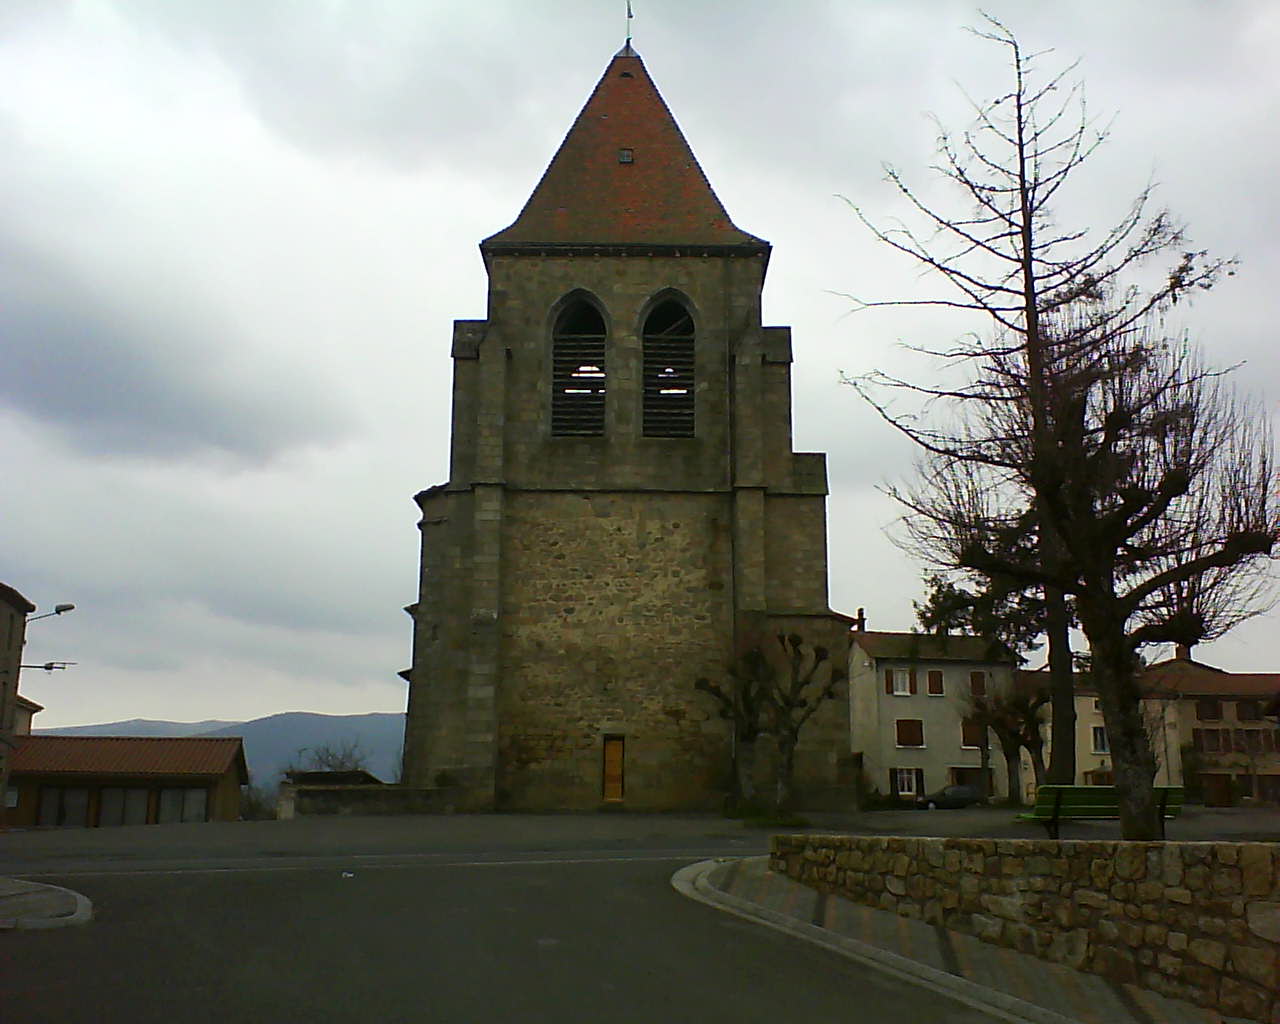 Eglise de BERTIGNAT